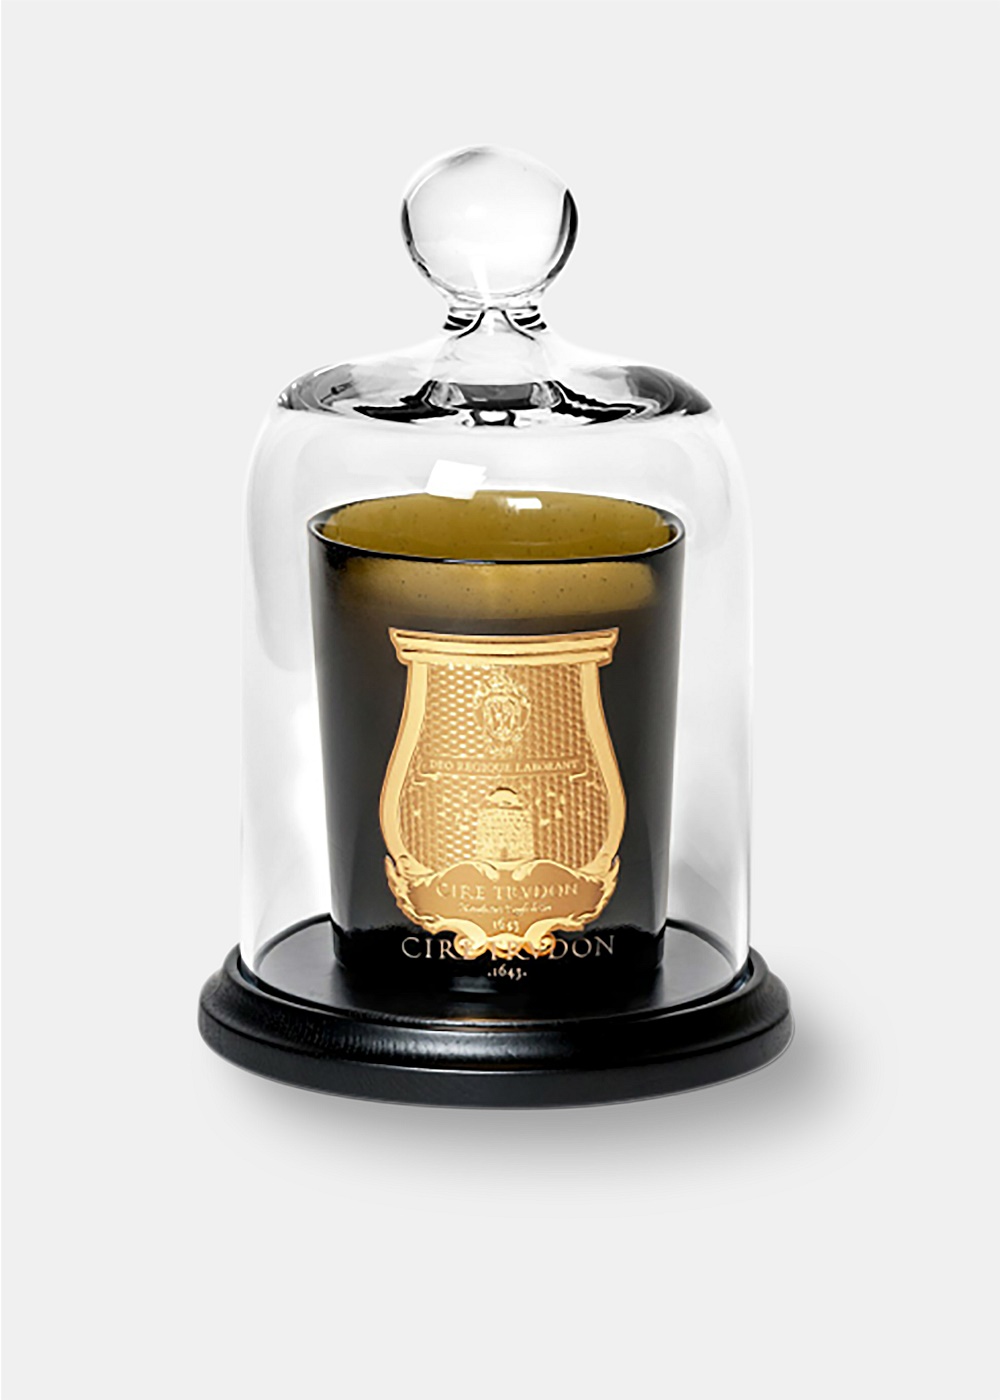 Shop Trudon Candles Online in Australia | Harrolds - La Cloche Bell Jar